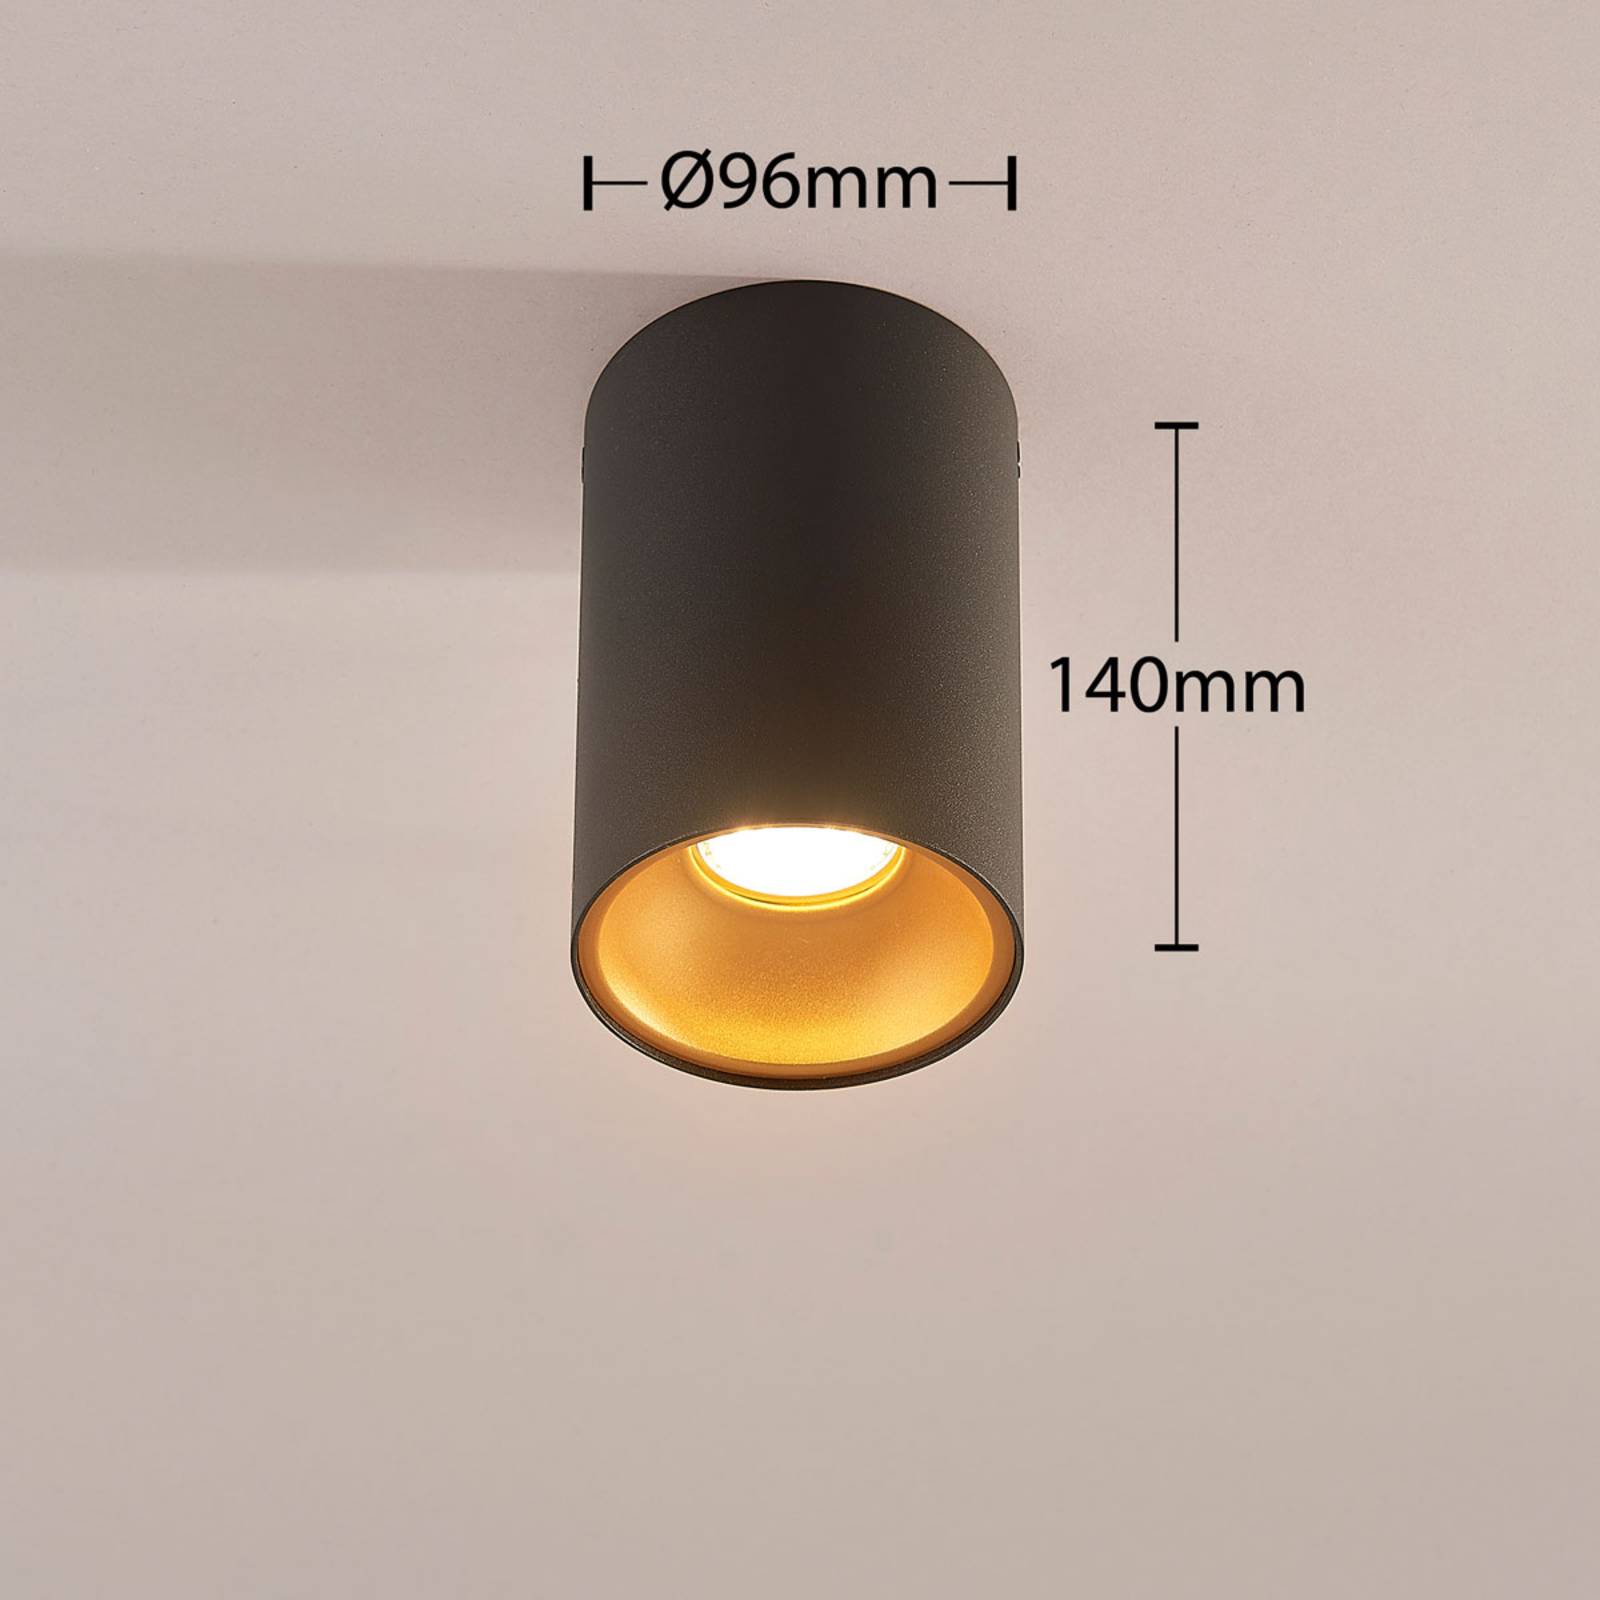 Vinja – Loftslampe med indvendig reflektor